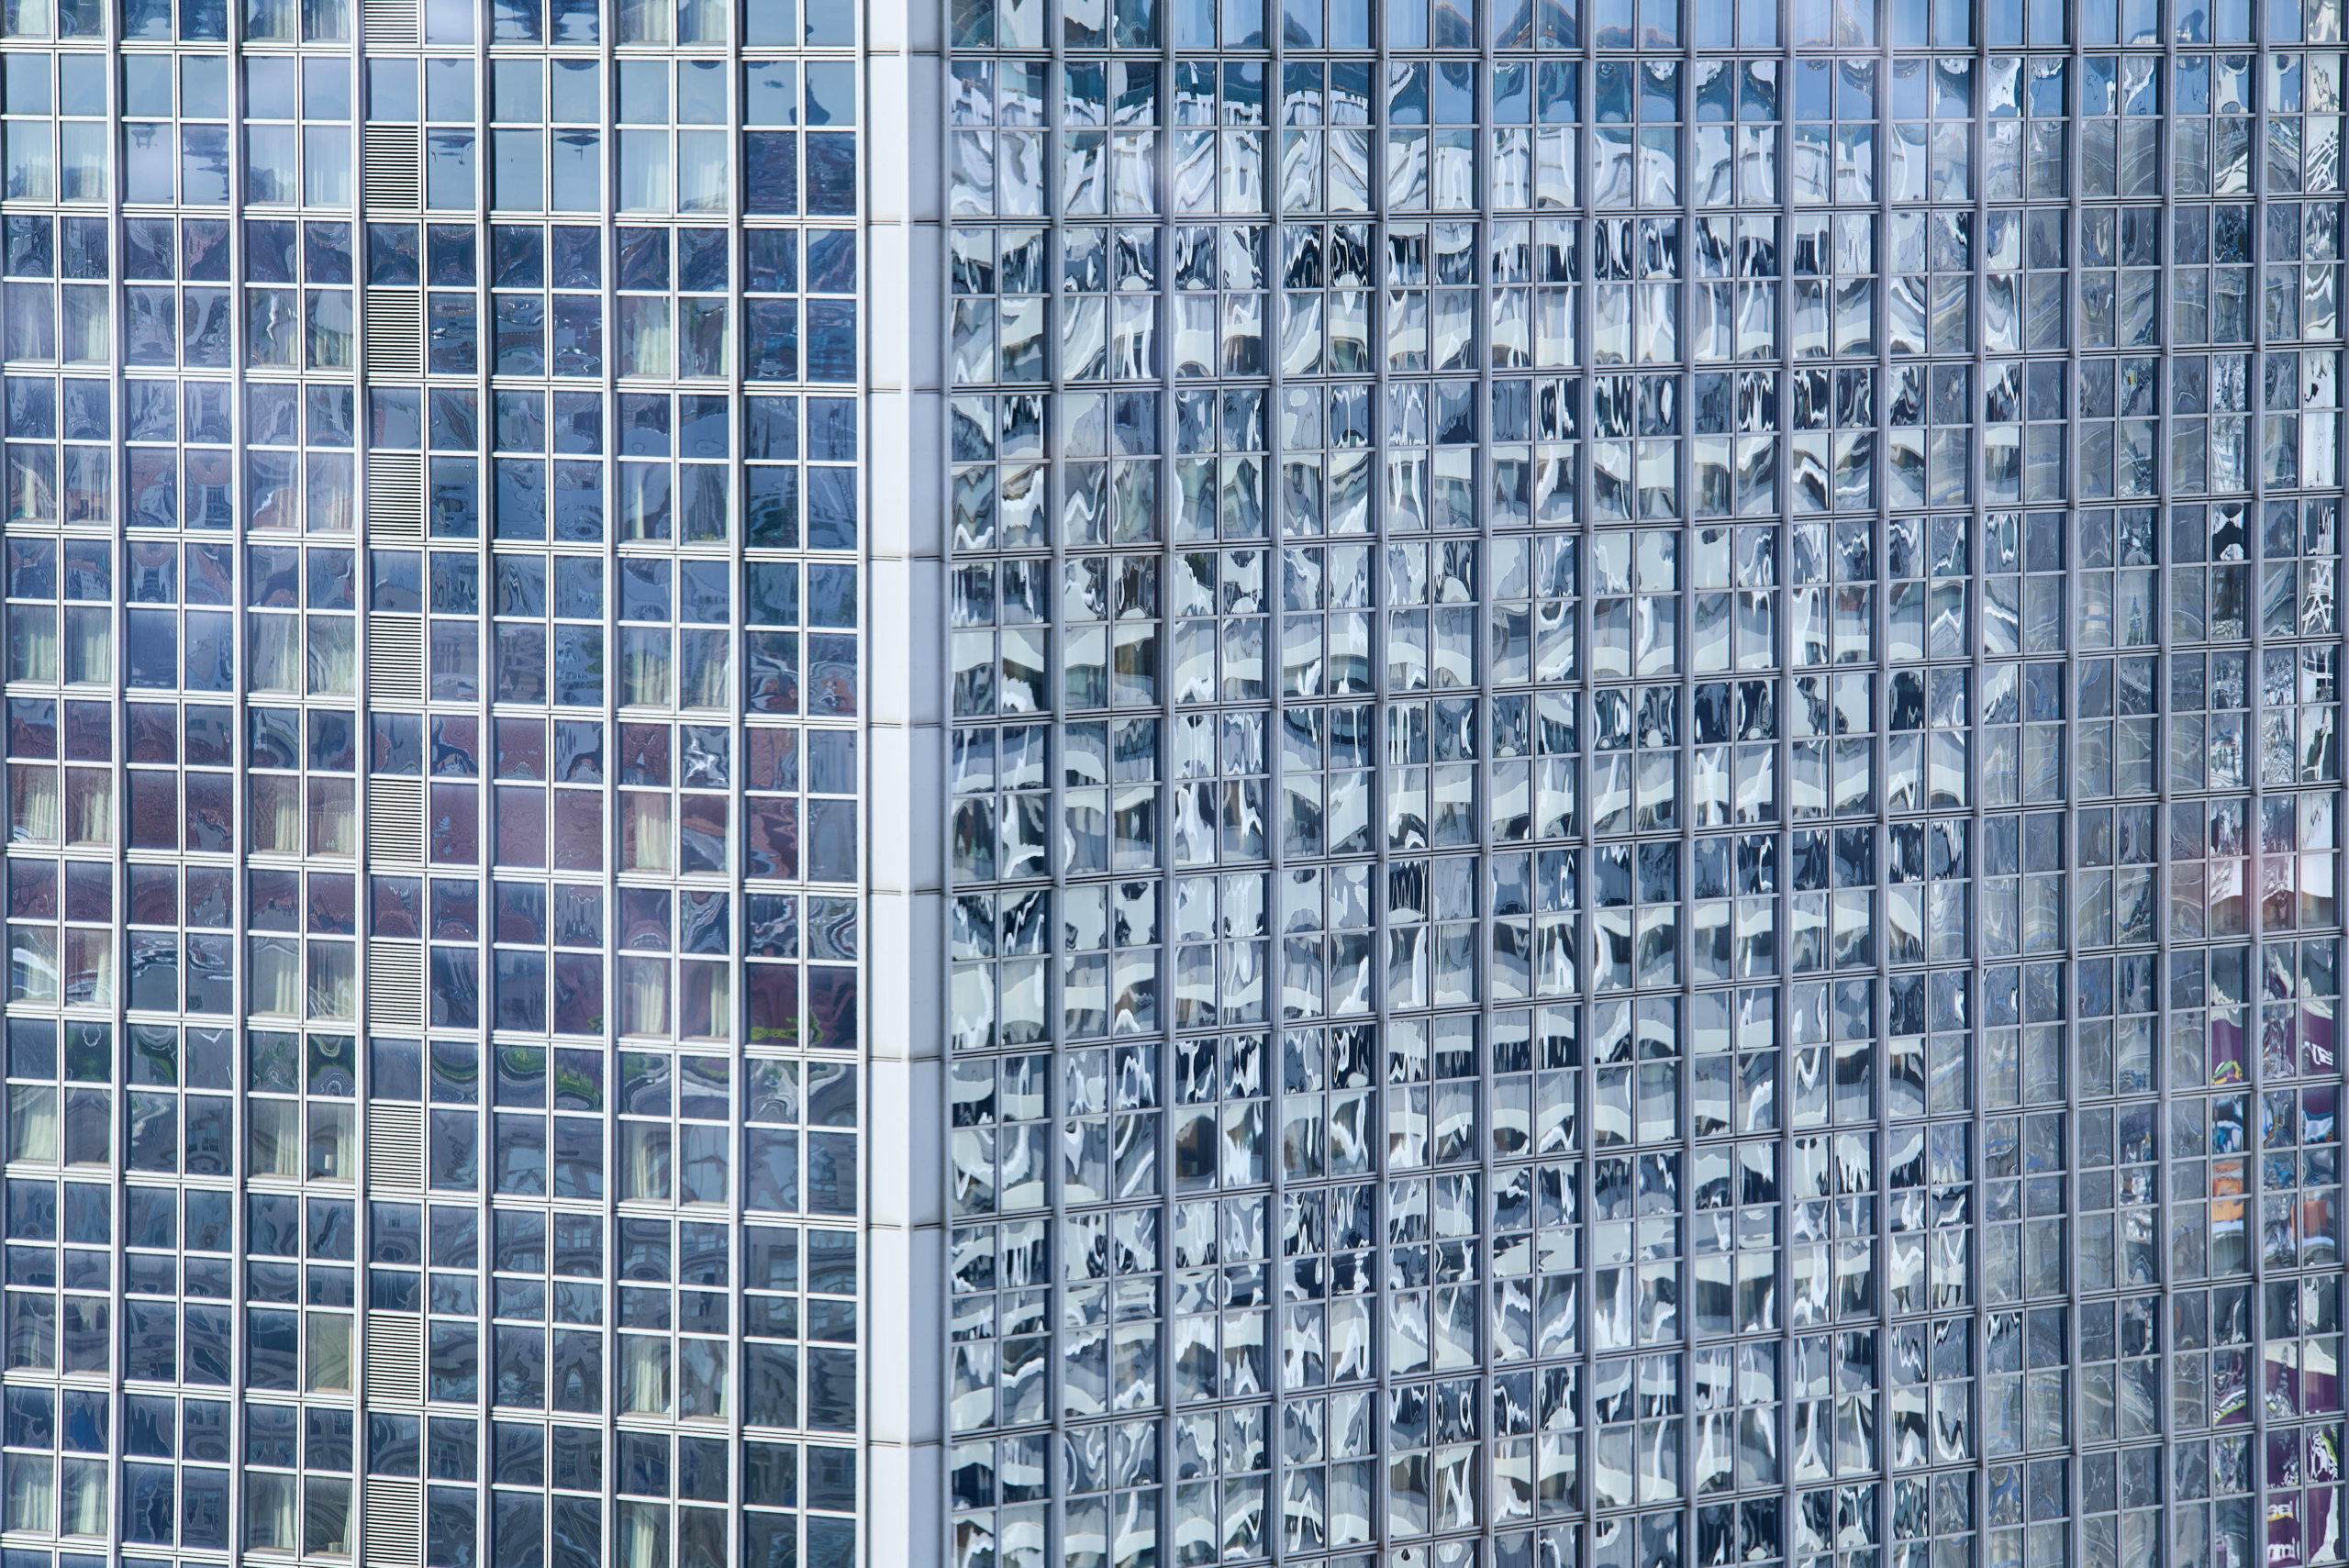 Berlin Fassaden: Glasfassade des Hotels Park Inn am Alexanderplatz. Foto: Imago/Snapshot Photography/F. Boillot